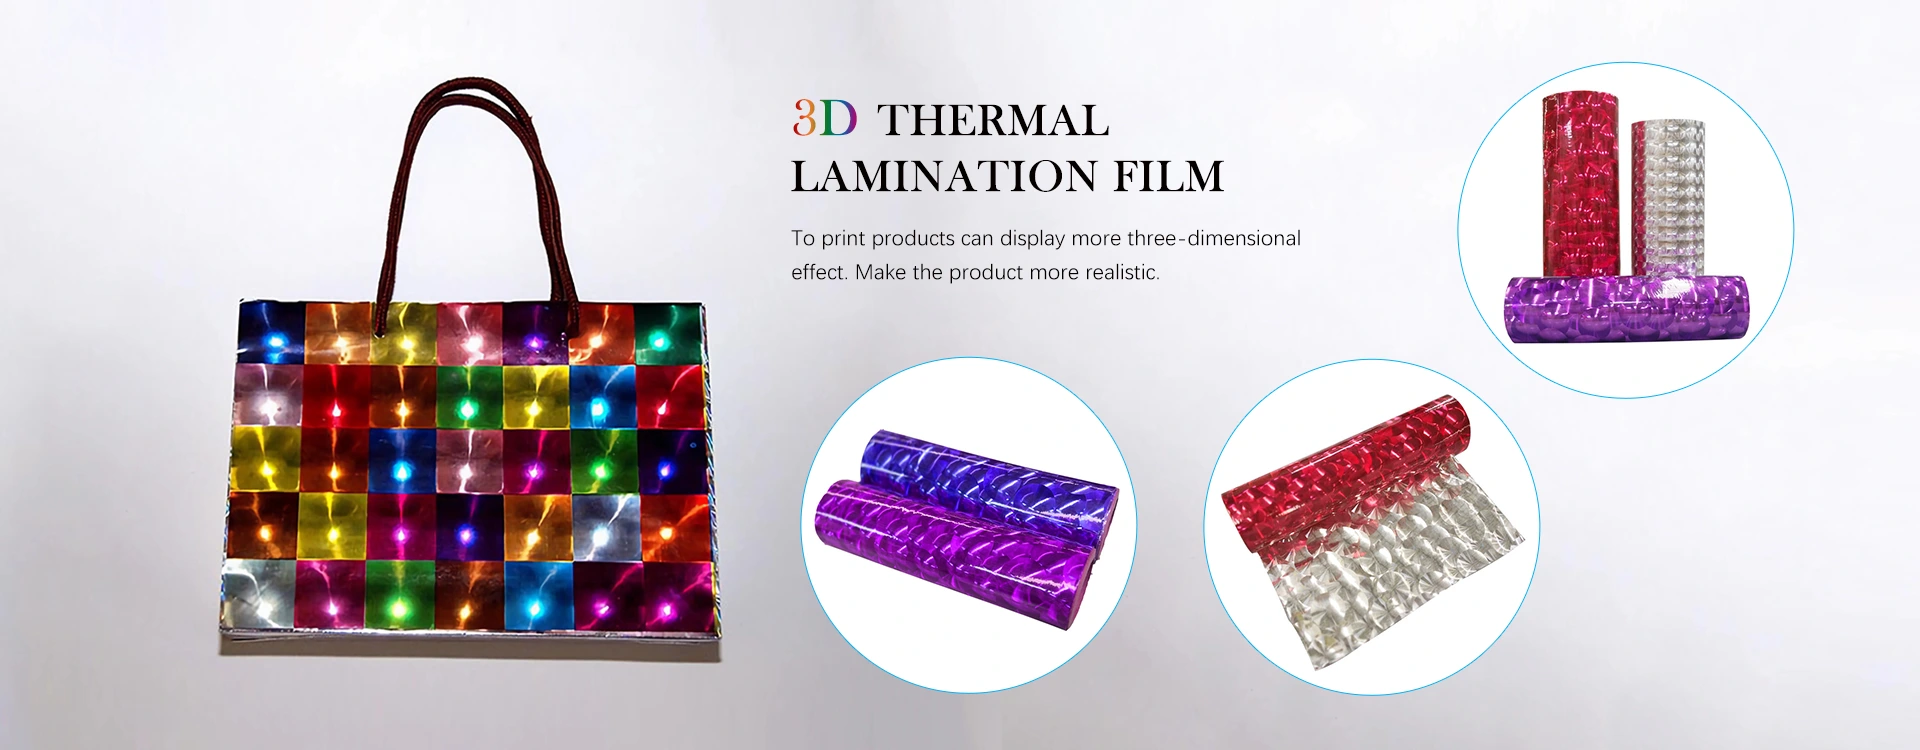 3D အပူခံ Lamination ရုပ်ရှင်ထုတ်လုပ်ရေး